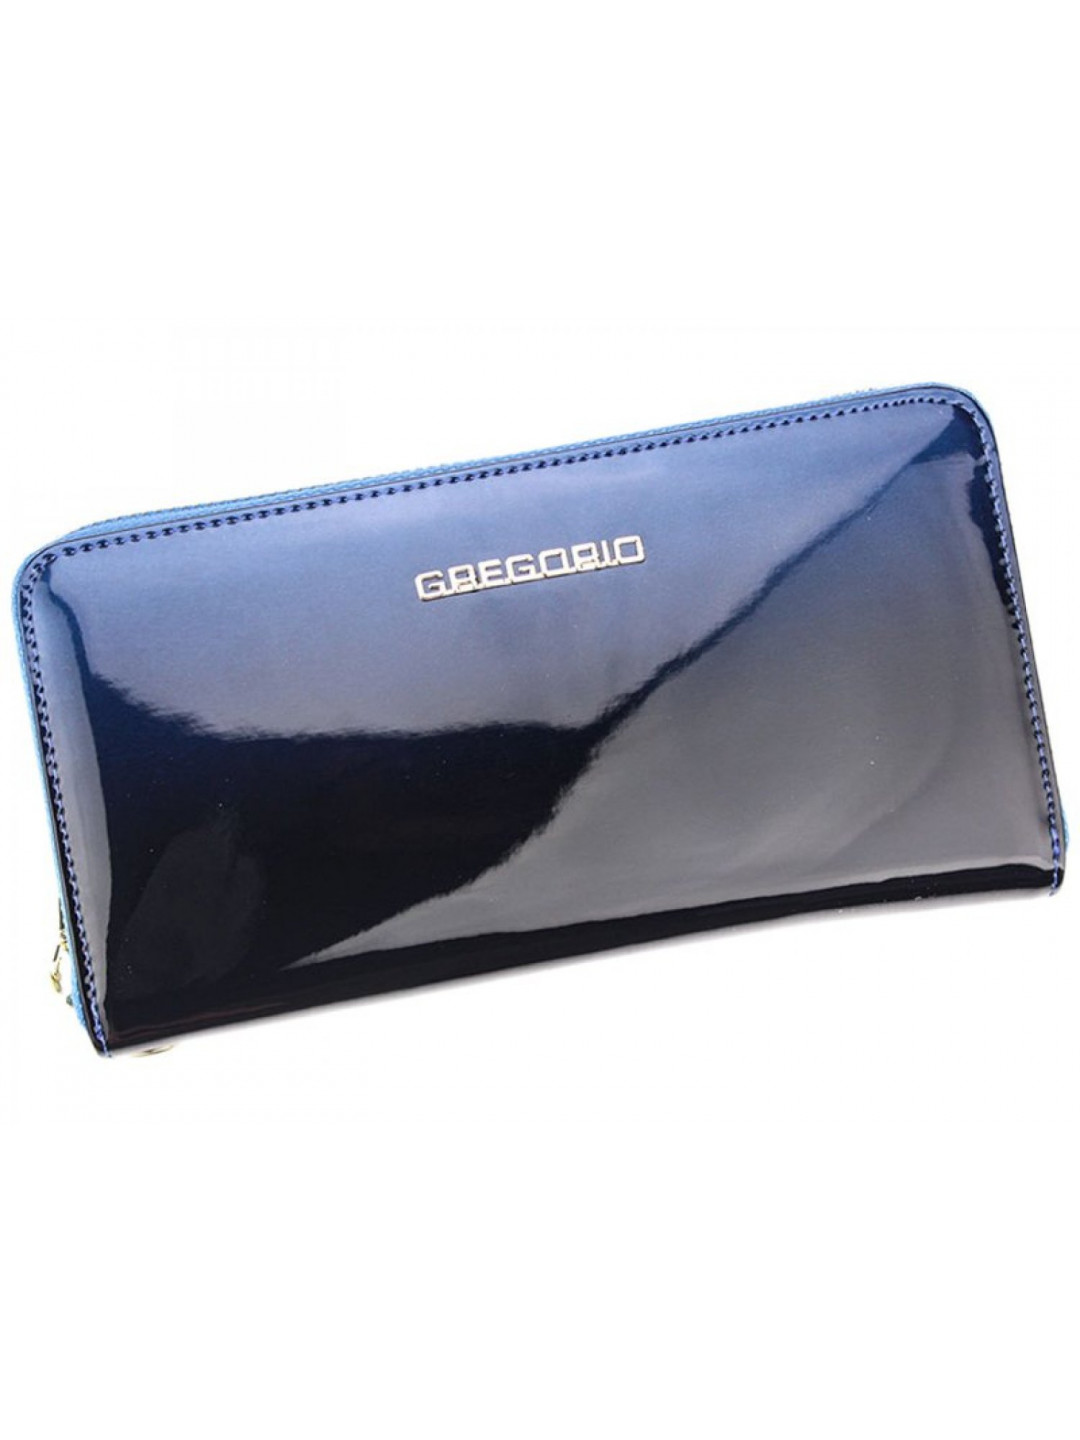 Dámská kožená pouzdrová peněženka modrá – Gregorio Clorinna